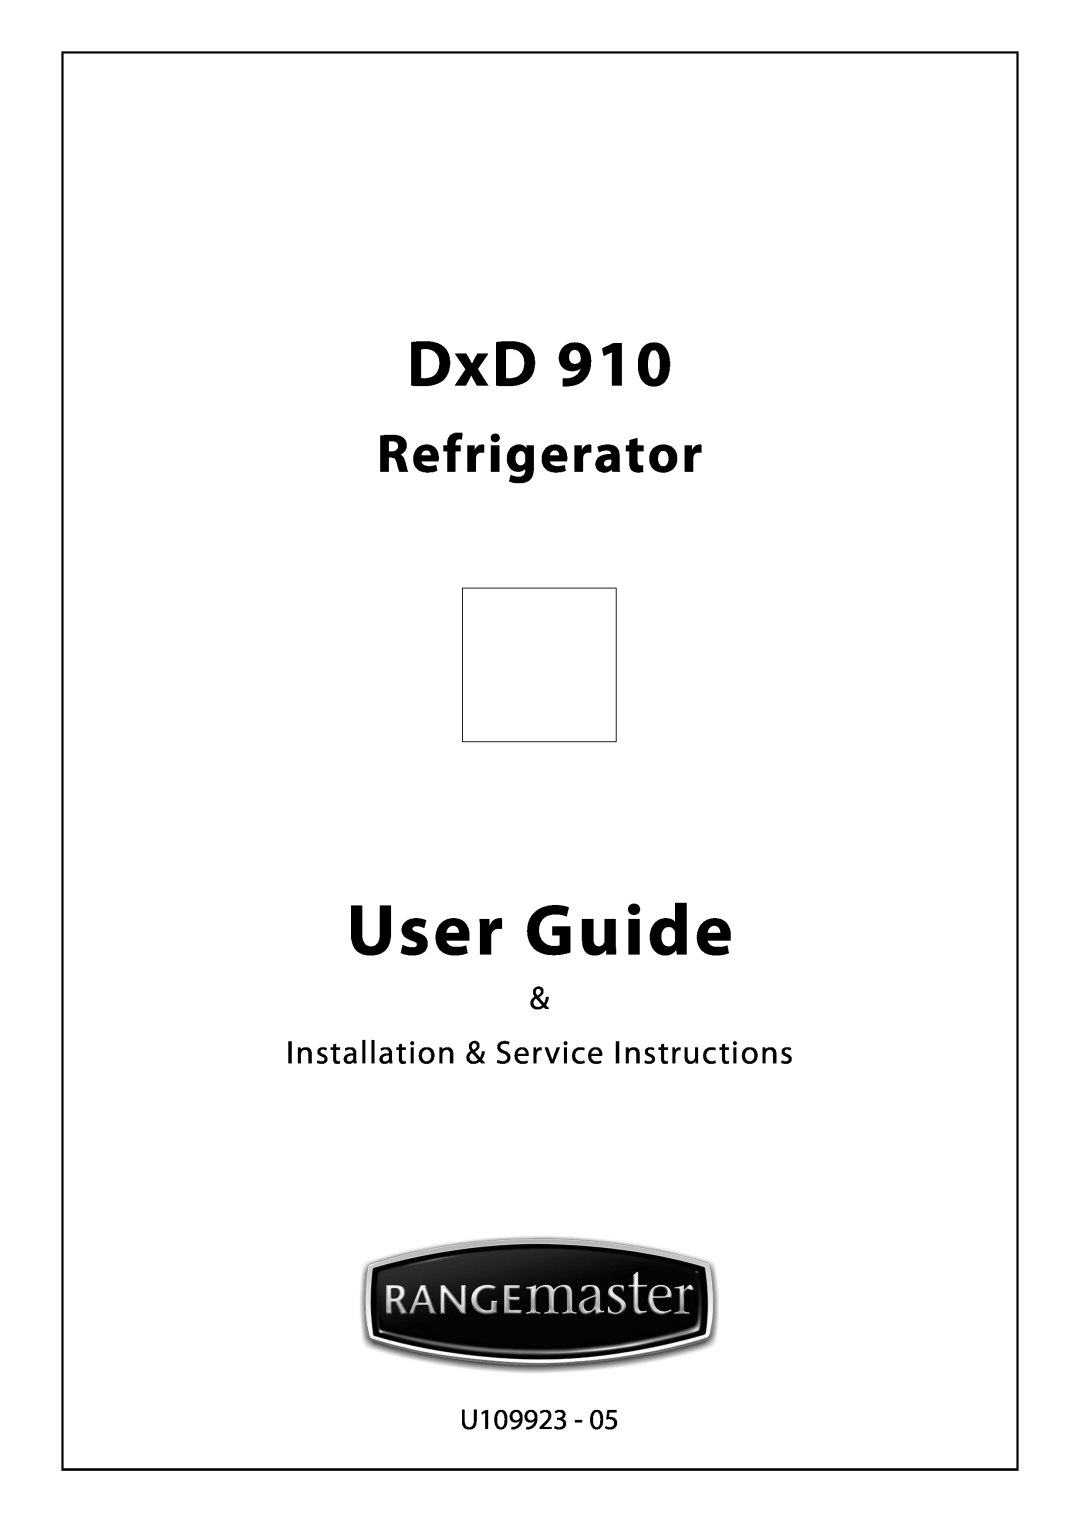 Rangemaster U109923 - 05 manual User Guide, Refrigerator, Installation & Service Instructions 